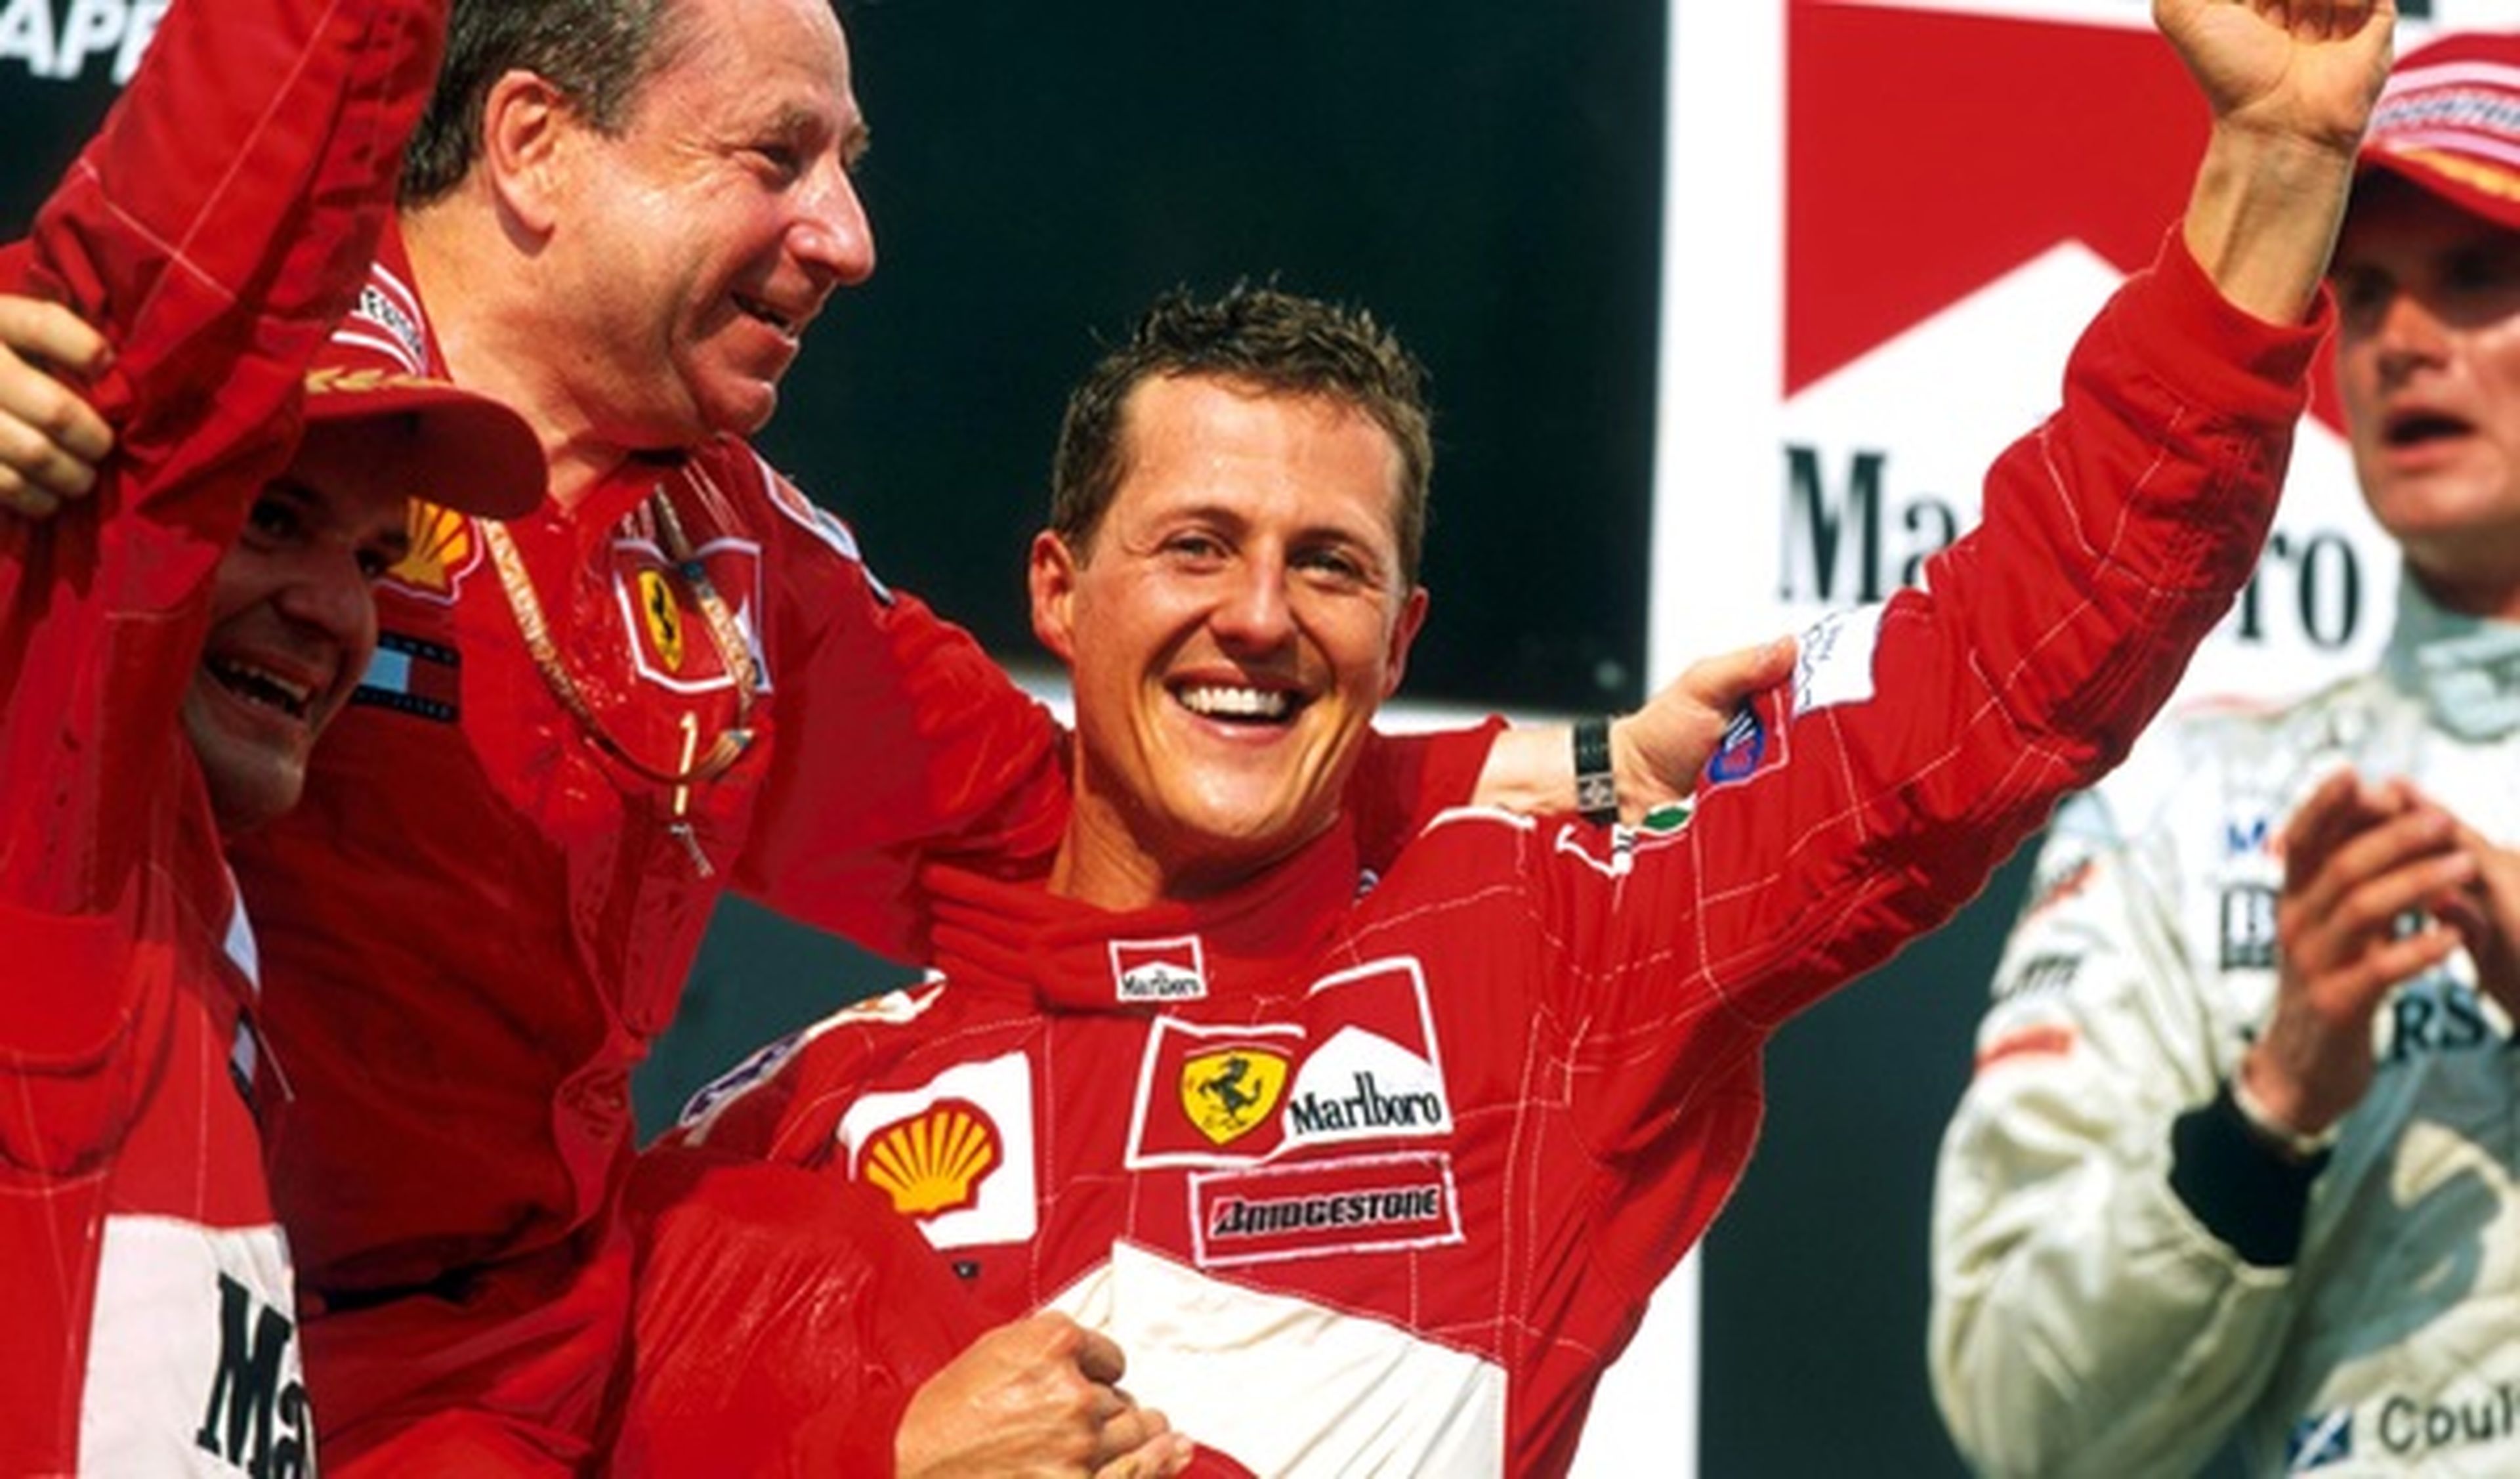 El estado de Michael Schumacher sigue siendo asunto privado